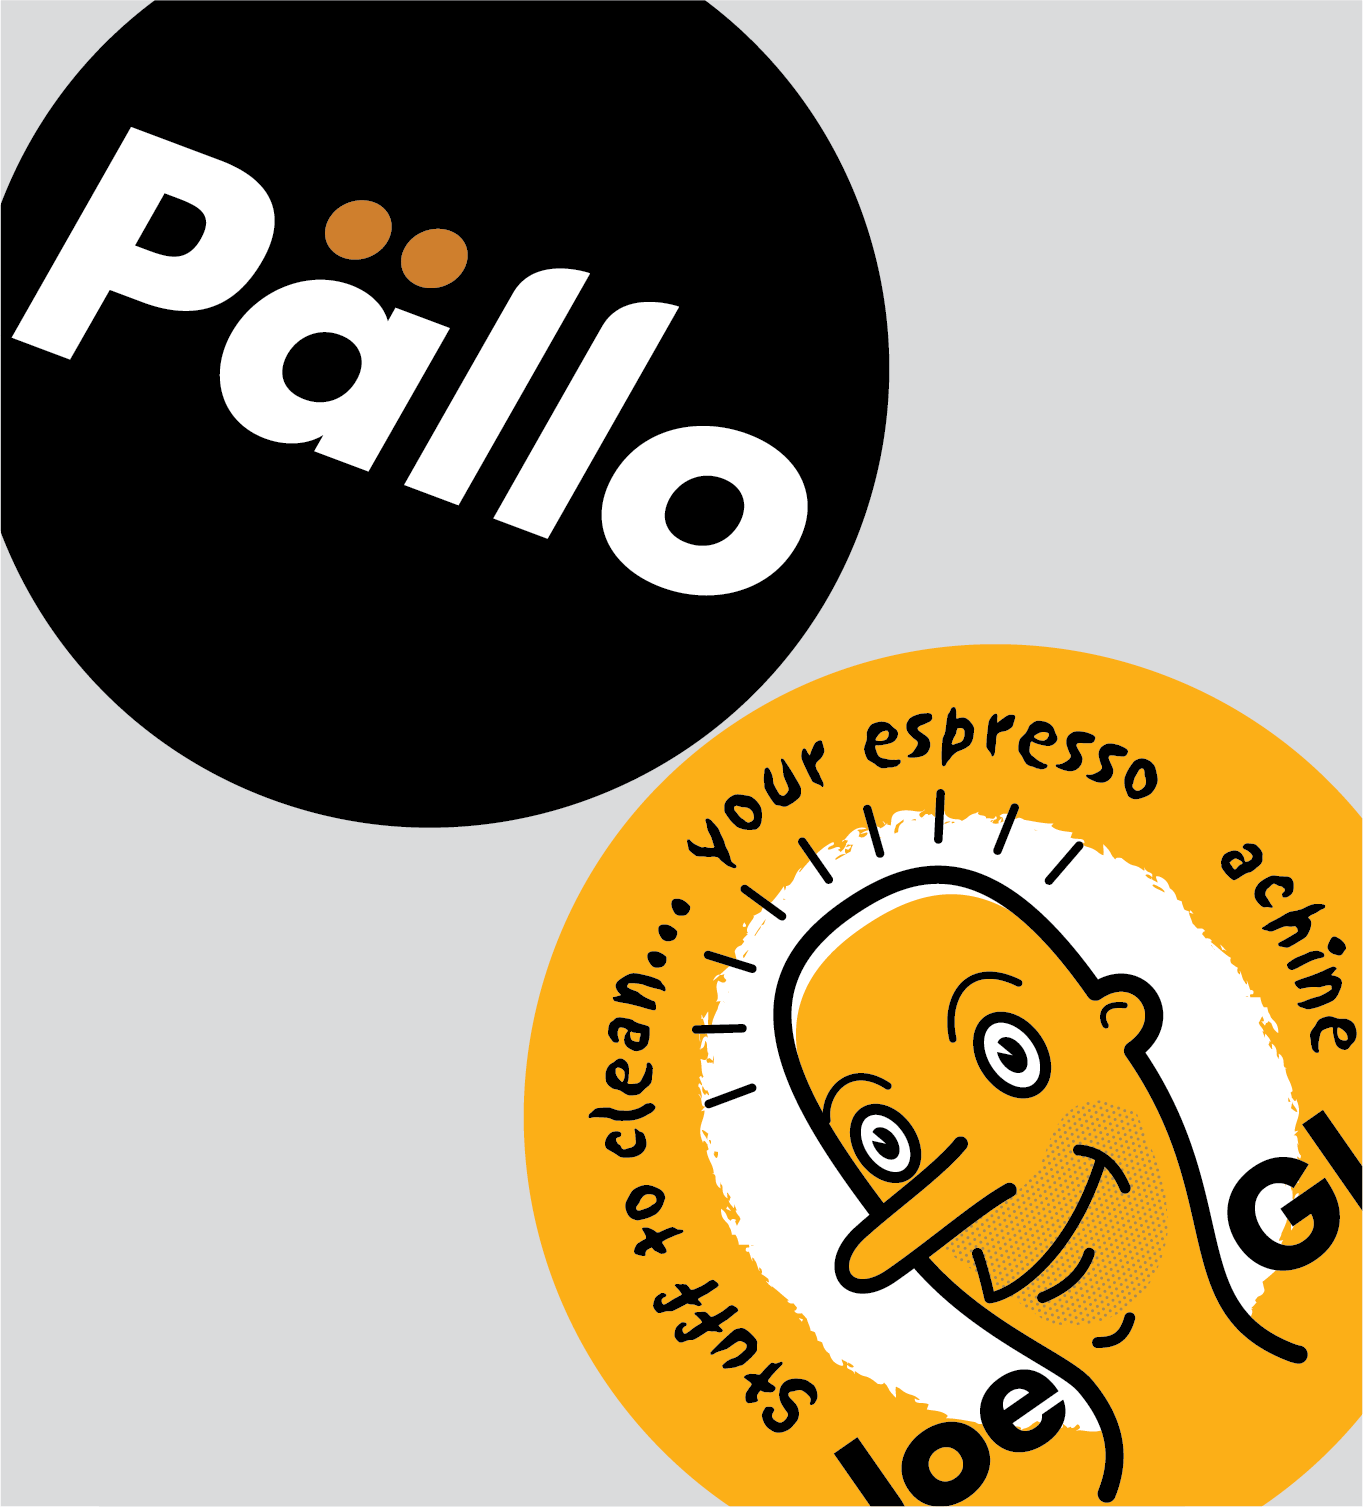 PALLO/JoeGlo